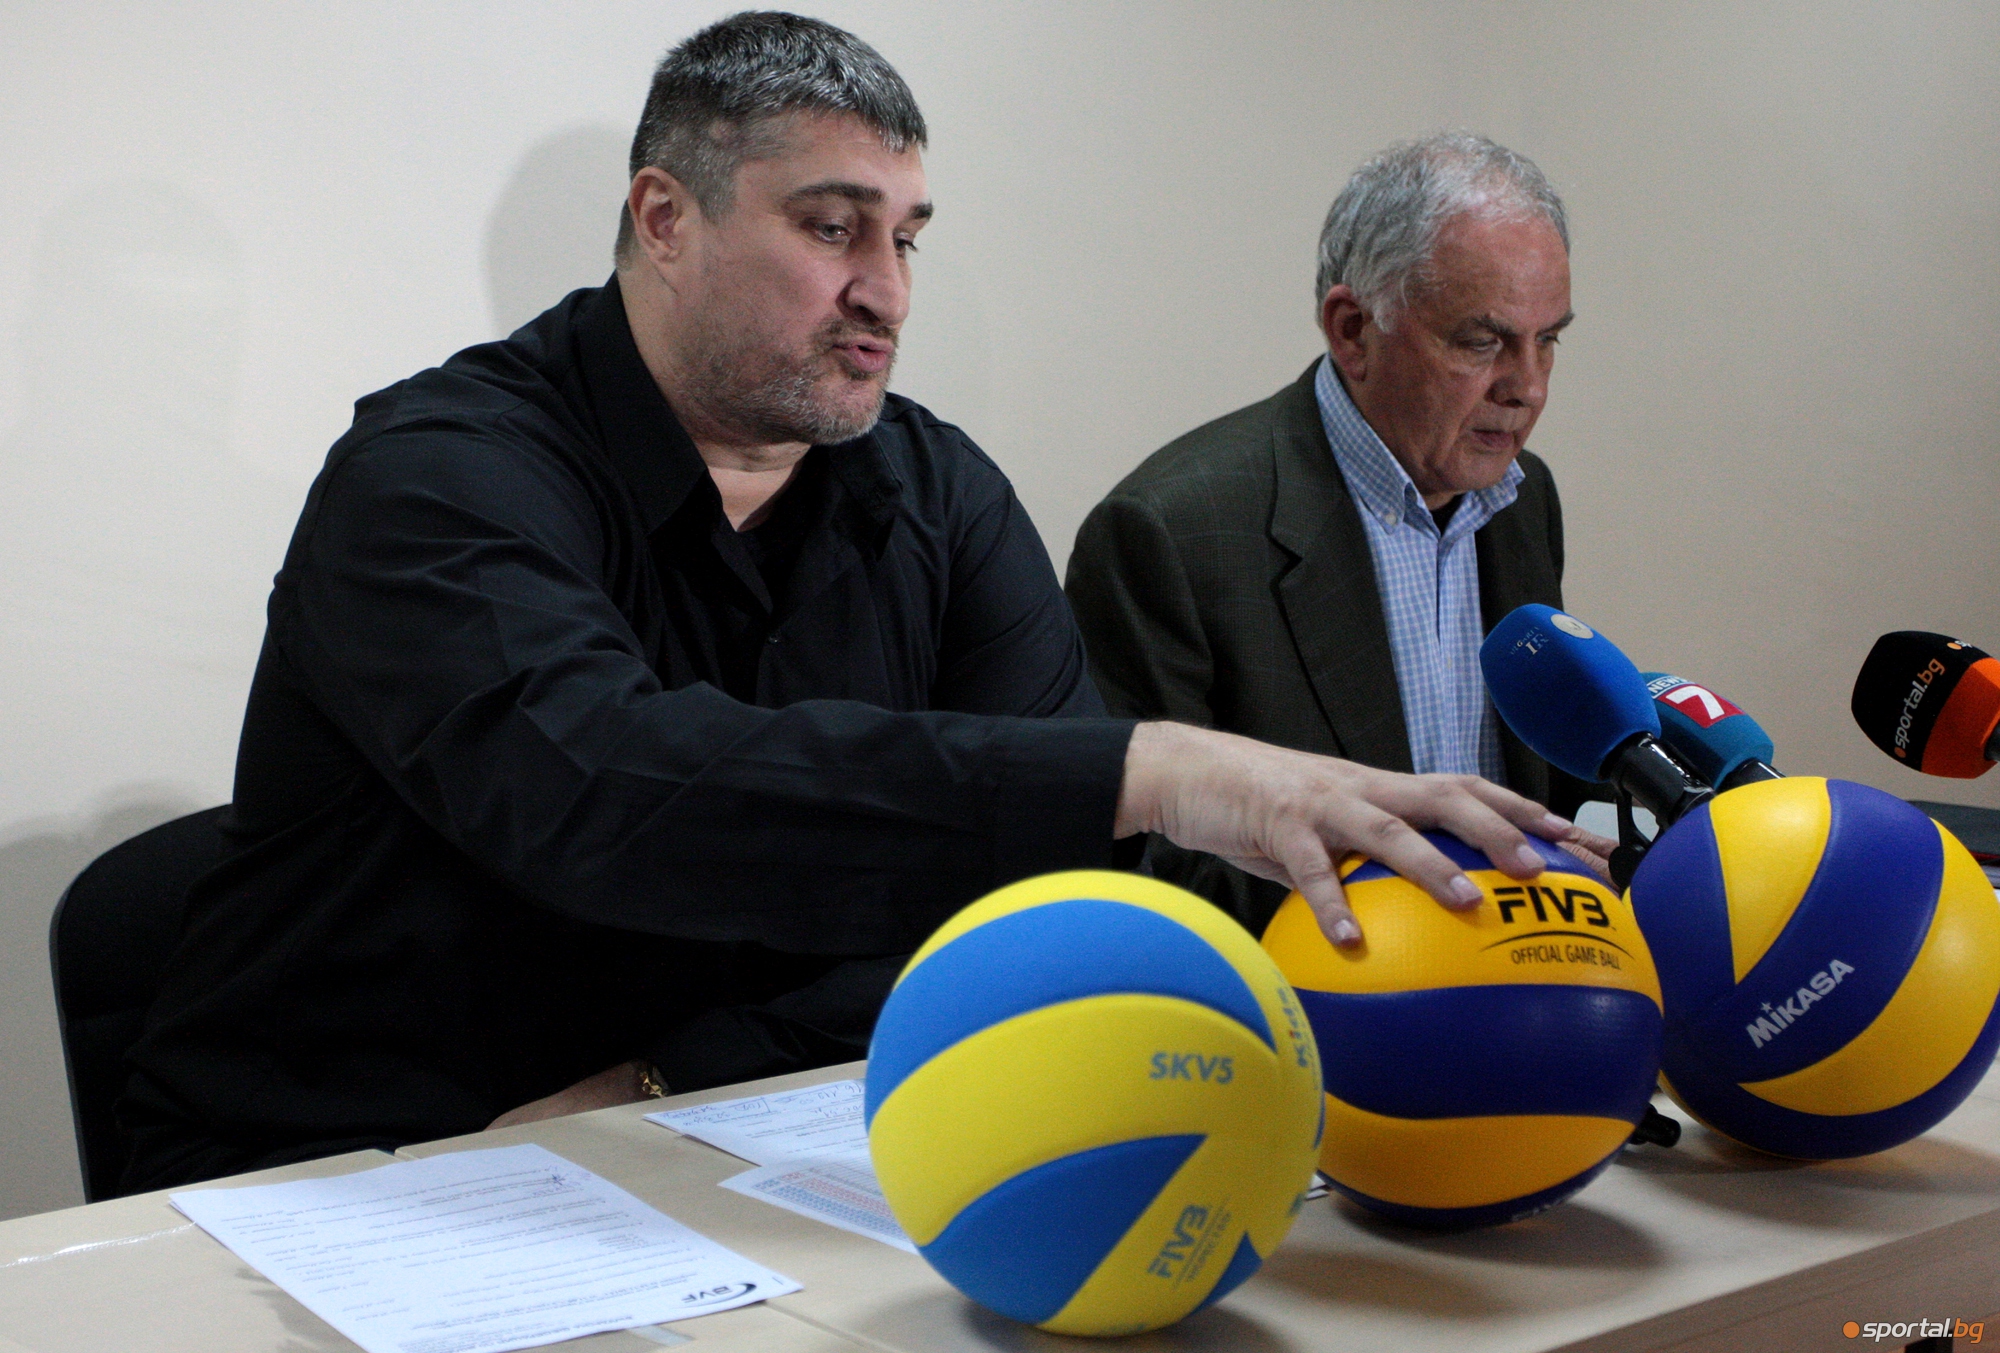 Управителният съвет на БФ Волейбол проведе над 4 часова среща днес в София